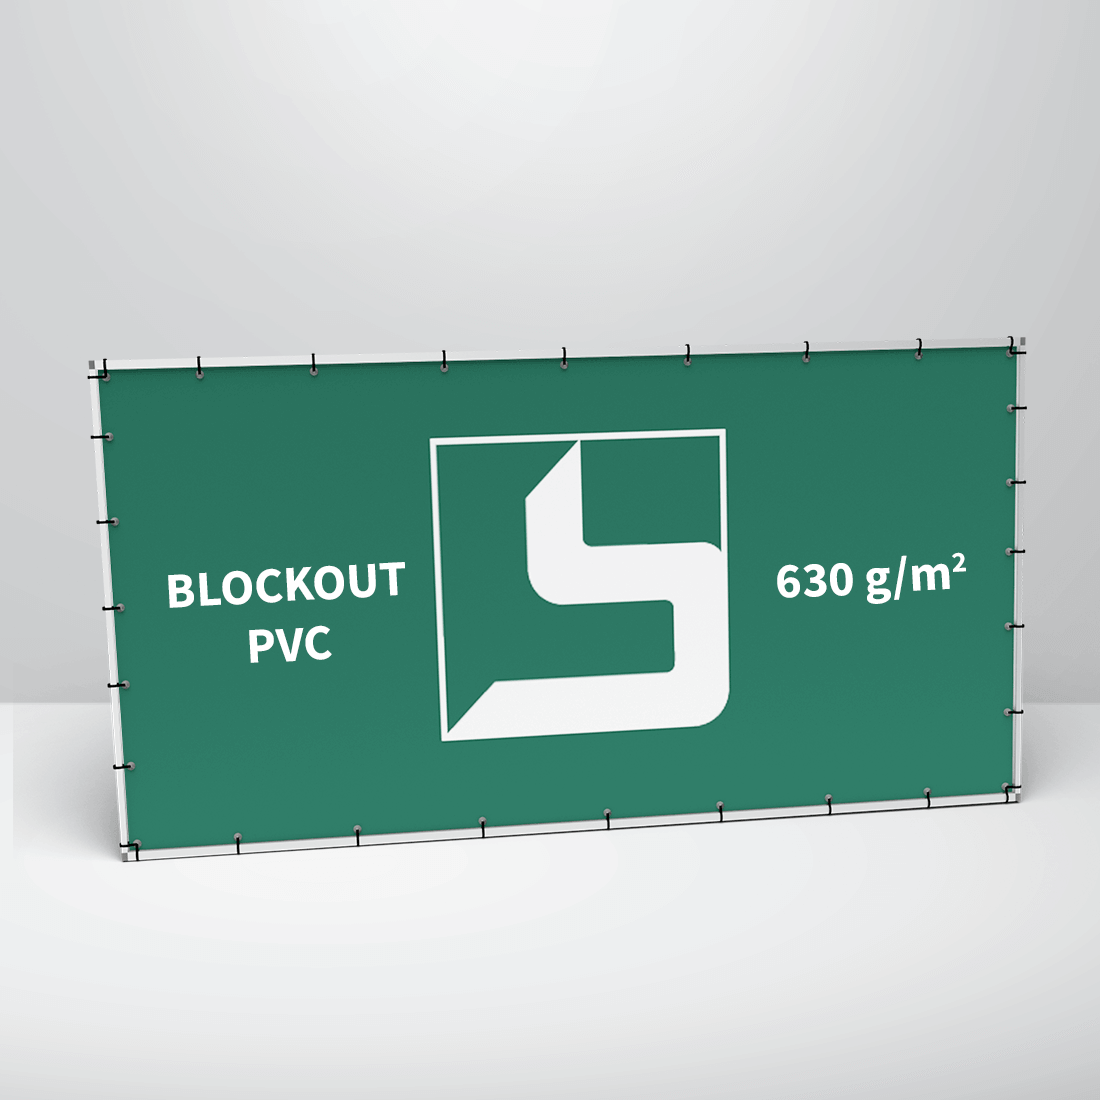 Transparent: Blockout PVC, 630 g/m2